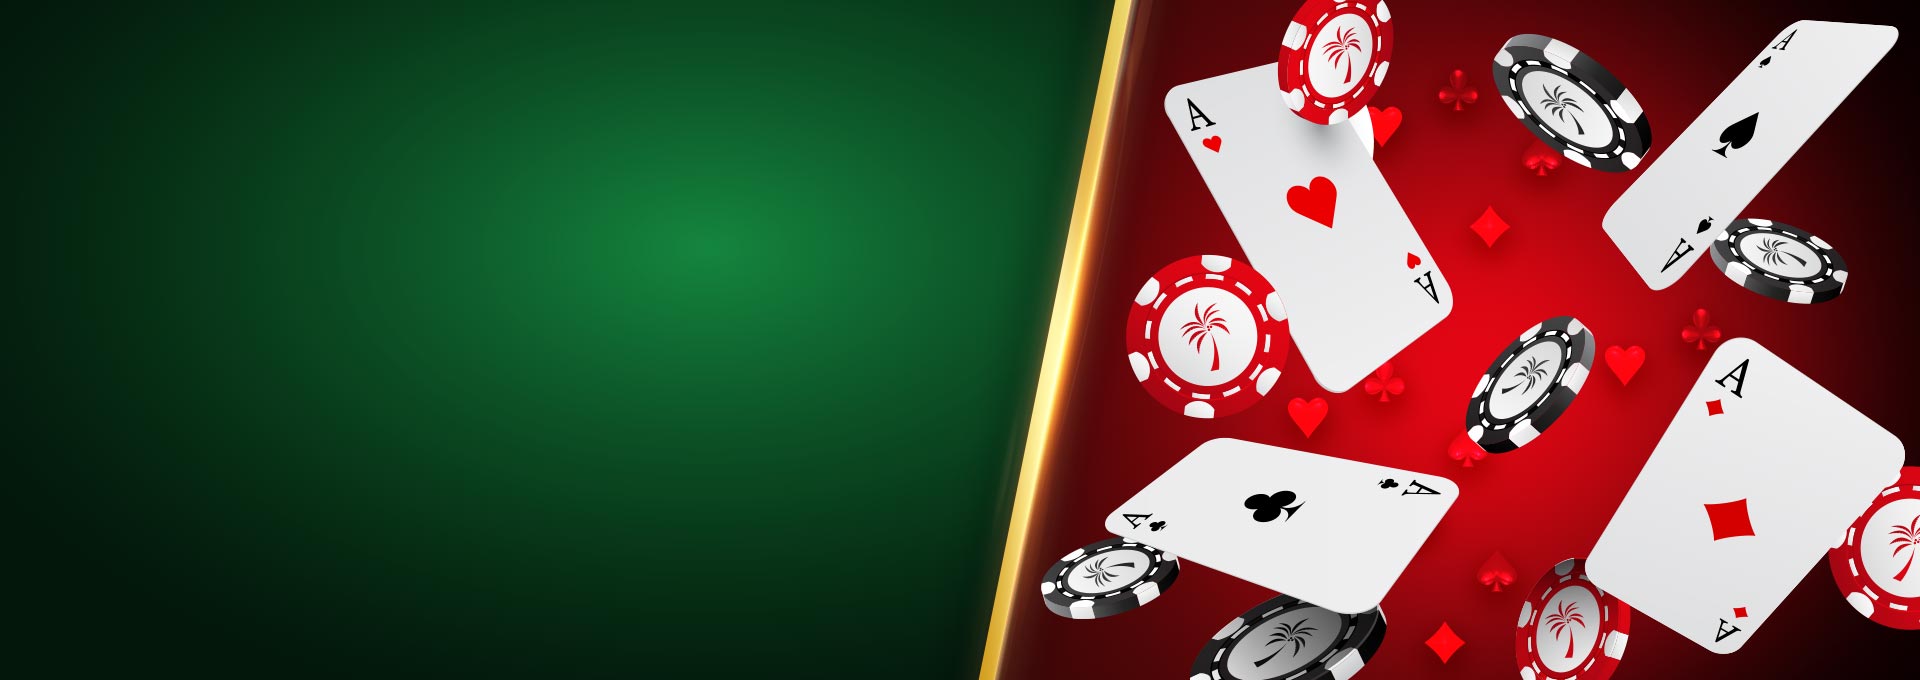 Casino solverde chaves eventos